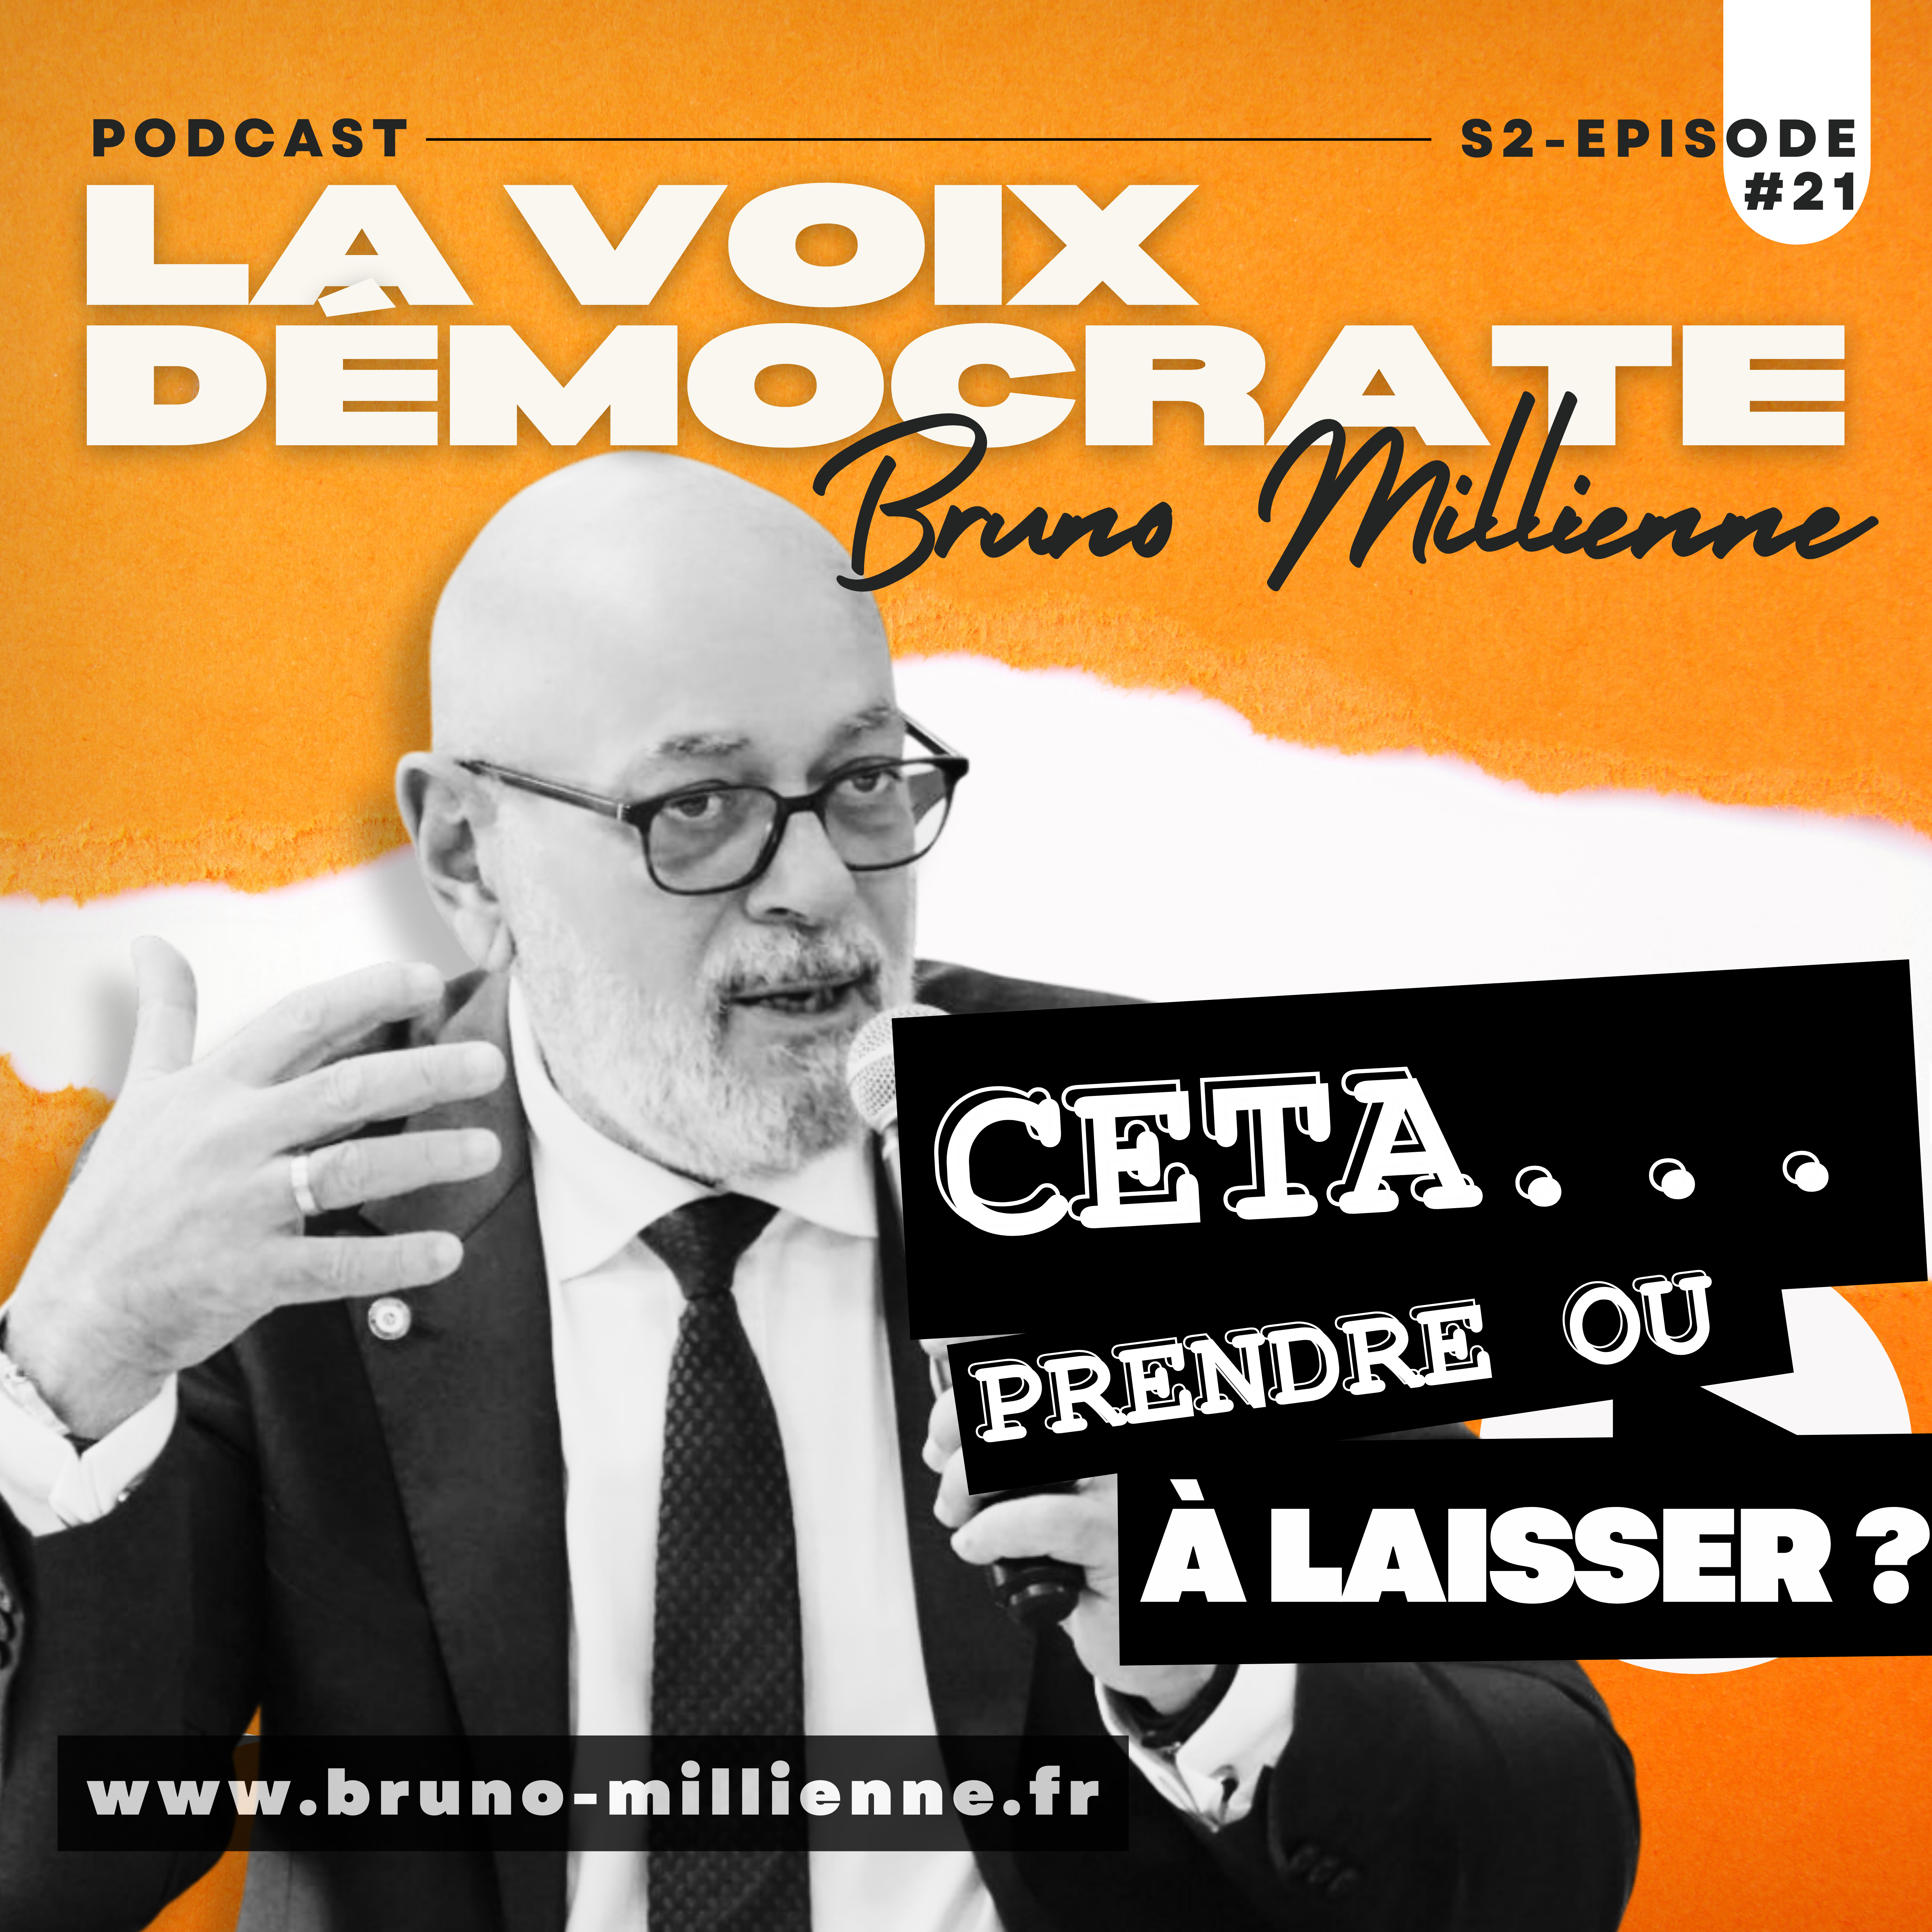 La Voix Démocrate S2 Episode#21 : CETA… Prendre ou à laisser ?